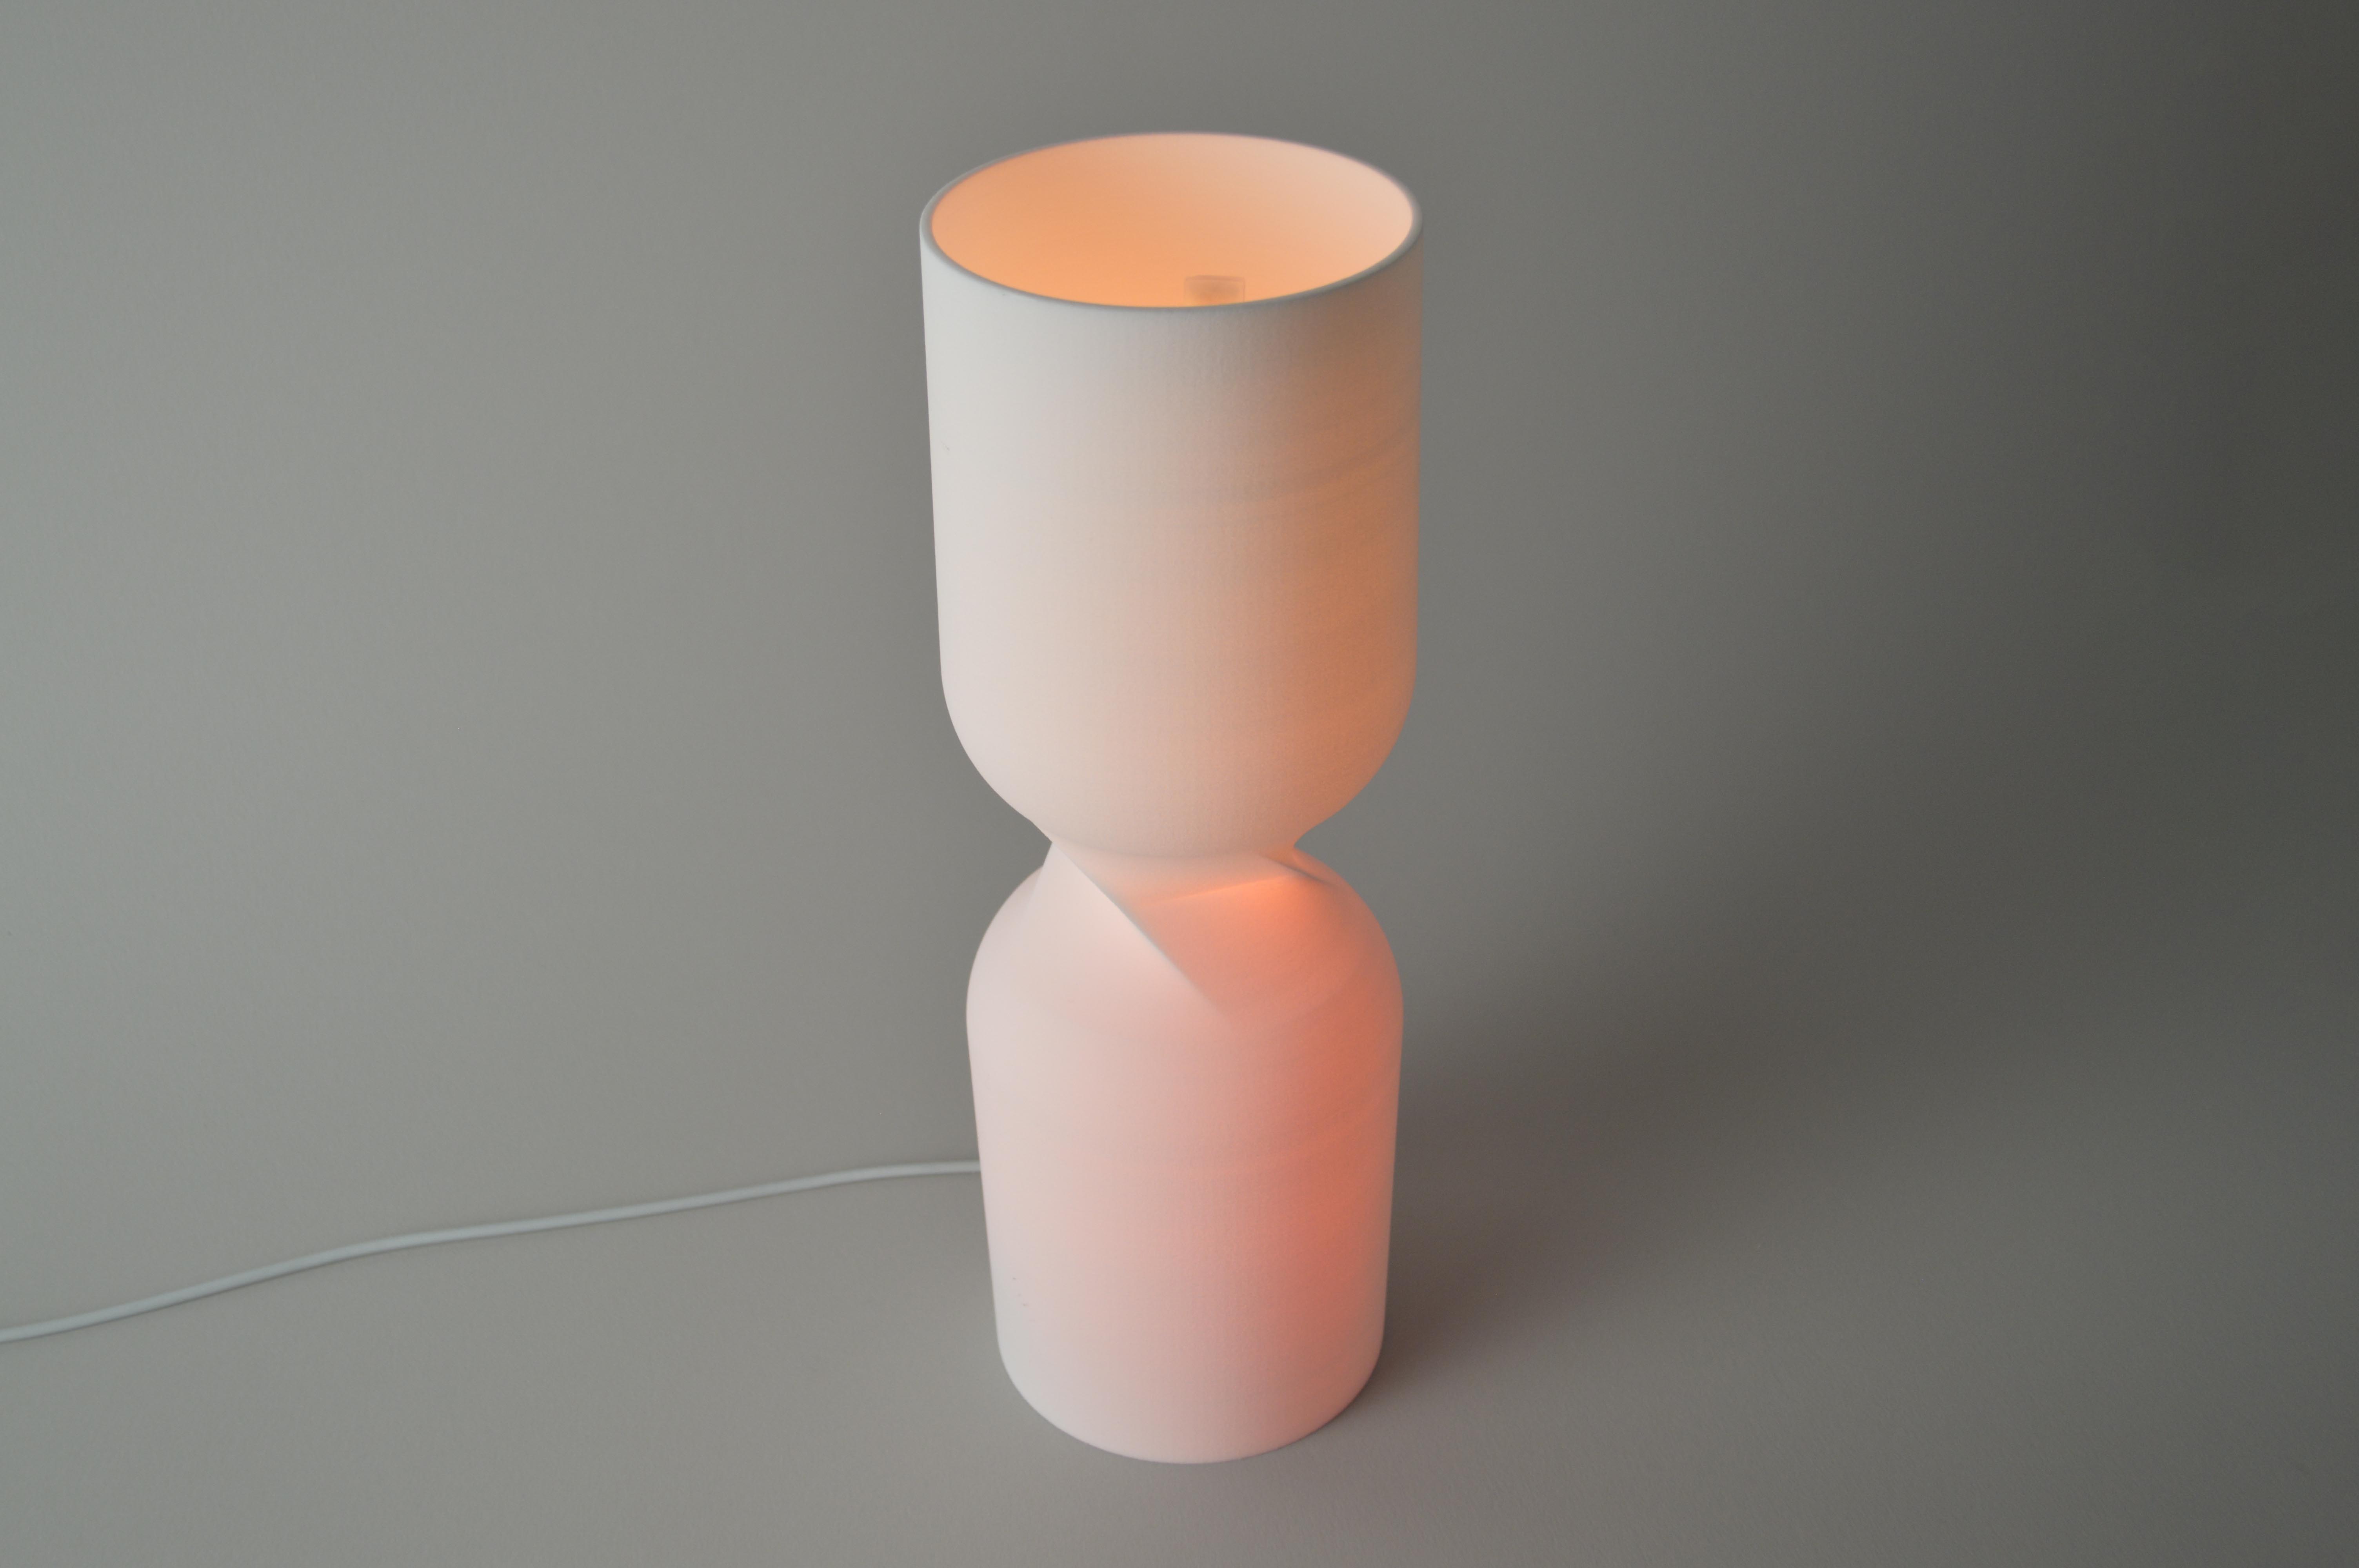 Industrial Design for Wellbeing: enLighten Lamp